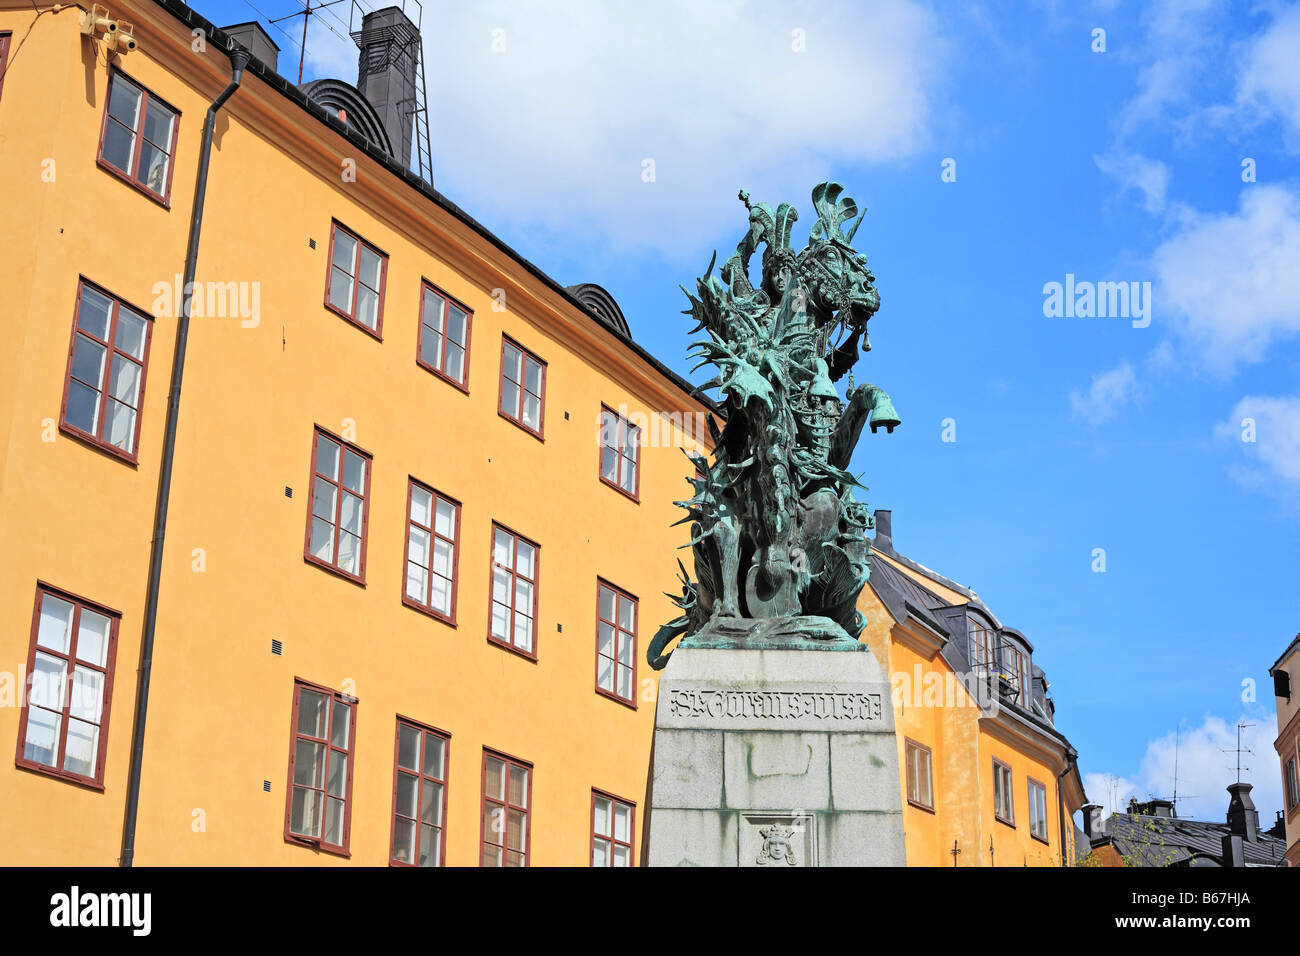 Saint George vaincre dragon, Sculpture en bronze, Monument, Gamla Stan (vieille ville), Stockholm, Suède Banque D'Images